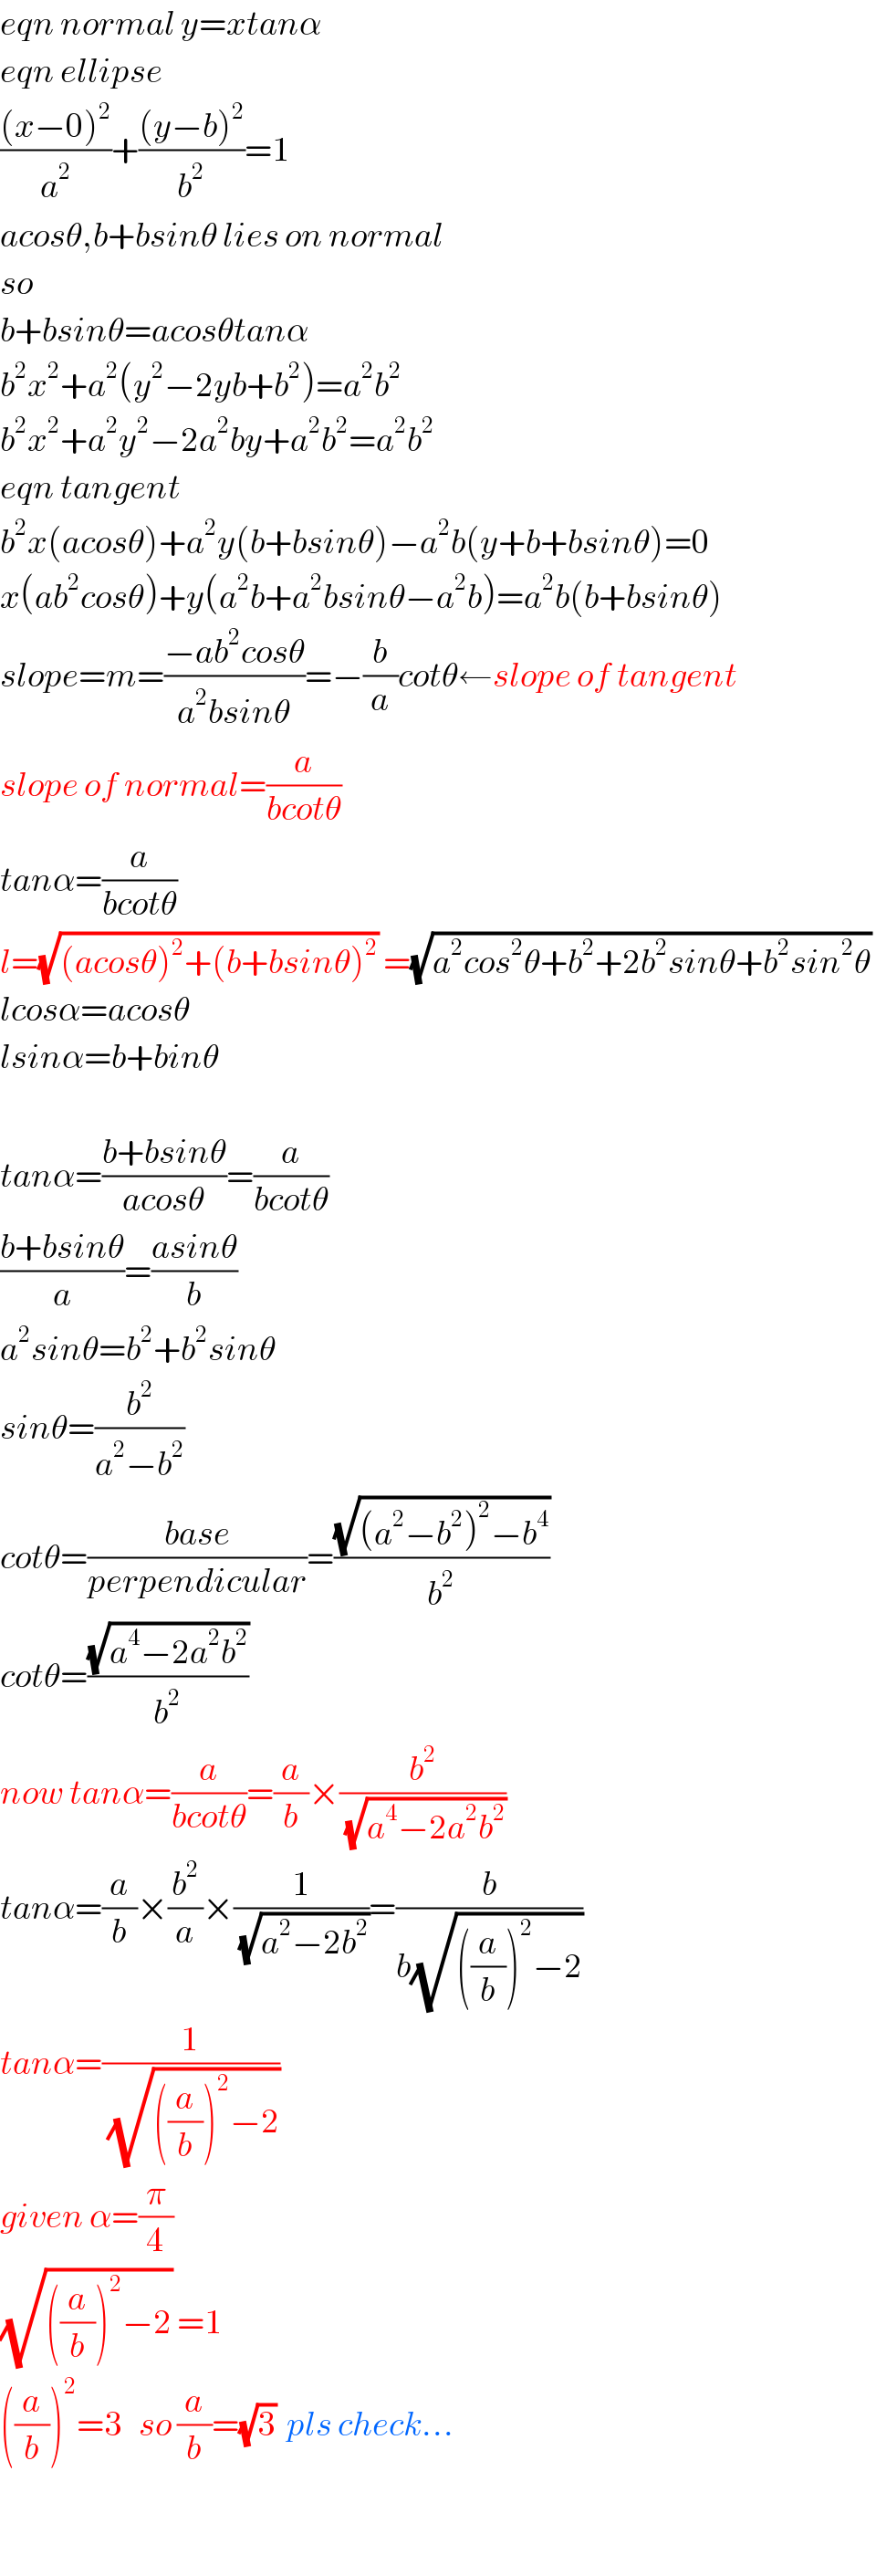 eqn normal y=xtanα  eqn ellipse  (((x−0)^2 )/a^2 )+(((y−b)^2 )/b^2 )=1  acosθ,b+bsinθ lies on normal  so  b+bsinθ=acosθtanα  b^2 x^2 +a^2 (y^2 −2yb+b^2 )=a^2 b^2   b^2 x^2 +a^2 y^2 −2a^2 by+a^2 b^2 =a^2 b^2   eqn tangent  b^2 x(acosθ)+a^2 y(b+bsinθ)−a^2 b(y+b+bsinθ)=0  x(ab^2 cosθ)+y(a^2 b+a^2 bsinθ−a^2 b)=a^2 b(b+bsinθ)  slope=m=((−ab^2 cosθ)/(a^2 bsinθ))=−(b/a)cotθ←slope of tangent  slope of normal=(a/(bcotθ))  tanα=(a/(bcotθ))  l=(√((acosθ)^2 +(b+bsinθ)^2 )) =(√(a^2 cos^2 θ+b^2 +2b^2 sinθ+b^2 sin^2 θ))   lcosα=acosθ  lsinα=b+binθ    tanα=((b+bsinθ)/(acosθ))=(a/(bcotθ))  ((b+bsinθ)/a)=((asinθ)/b)  a^2 sinθ=b^2 +b^2 sinθ  sinθ=(b^2 /(a^2 −b^2 ))  cotθ=((base)/(perpendicular))=((√((a^2 −b^2 )^2 −b^4 ))/b^2 )  cotθ=((√(a^4 −2a^2 b^2 ))/b^2 )  now tanα=(a/(bcotθ))=(a/b)×(b^2 /(√(a^4 −2a^2 b^2 )))  tanα=(a/b)×(b^2 /a)×(1/(√(a^2 −2b^2 )))=(b/(b(√(((a/b))^2 −2))))  tanα=(1/(√(((a/b))^2 −2)))  given α=(π/4)  (√(((a/b))^2 −2)) =1  ((a/b))^2 =3   so (a/b)=(√3)  pls check...    